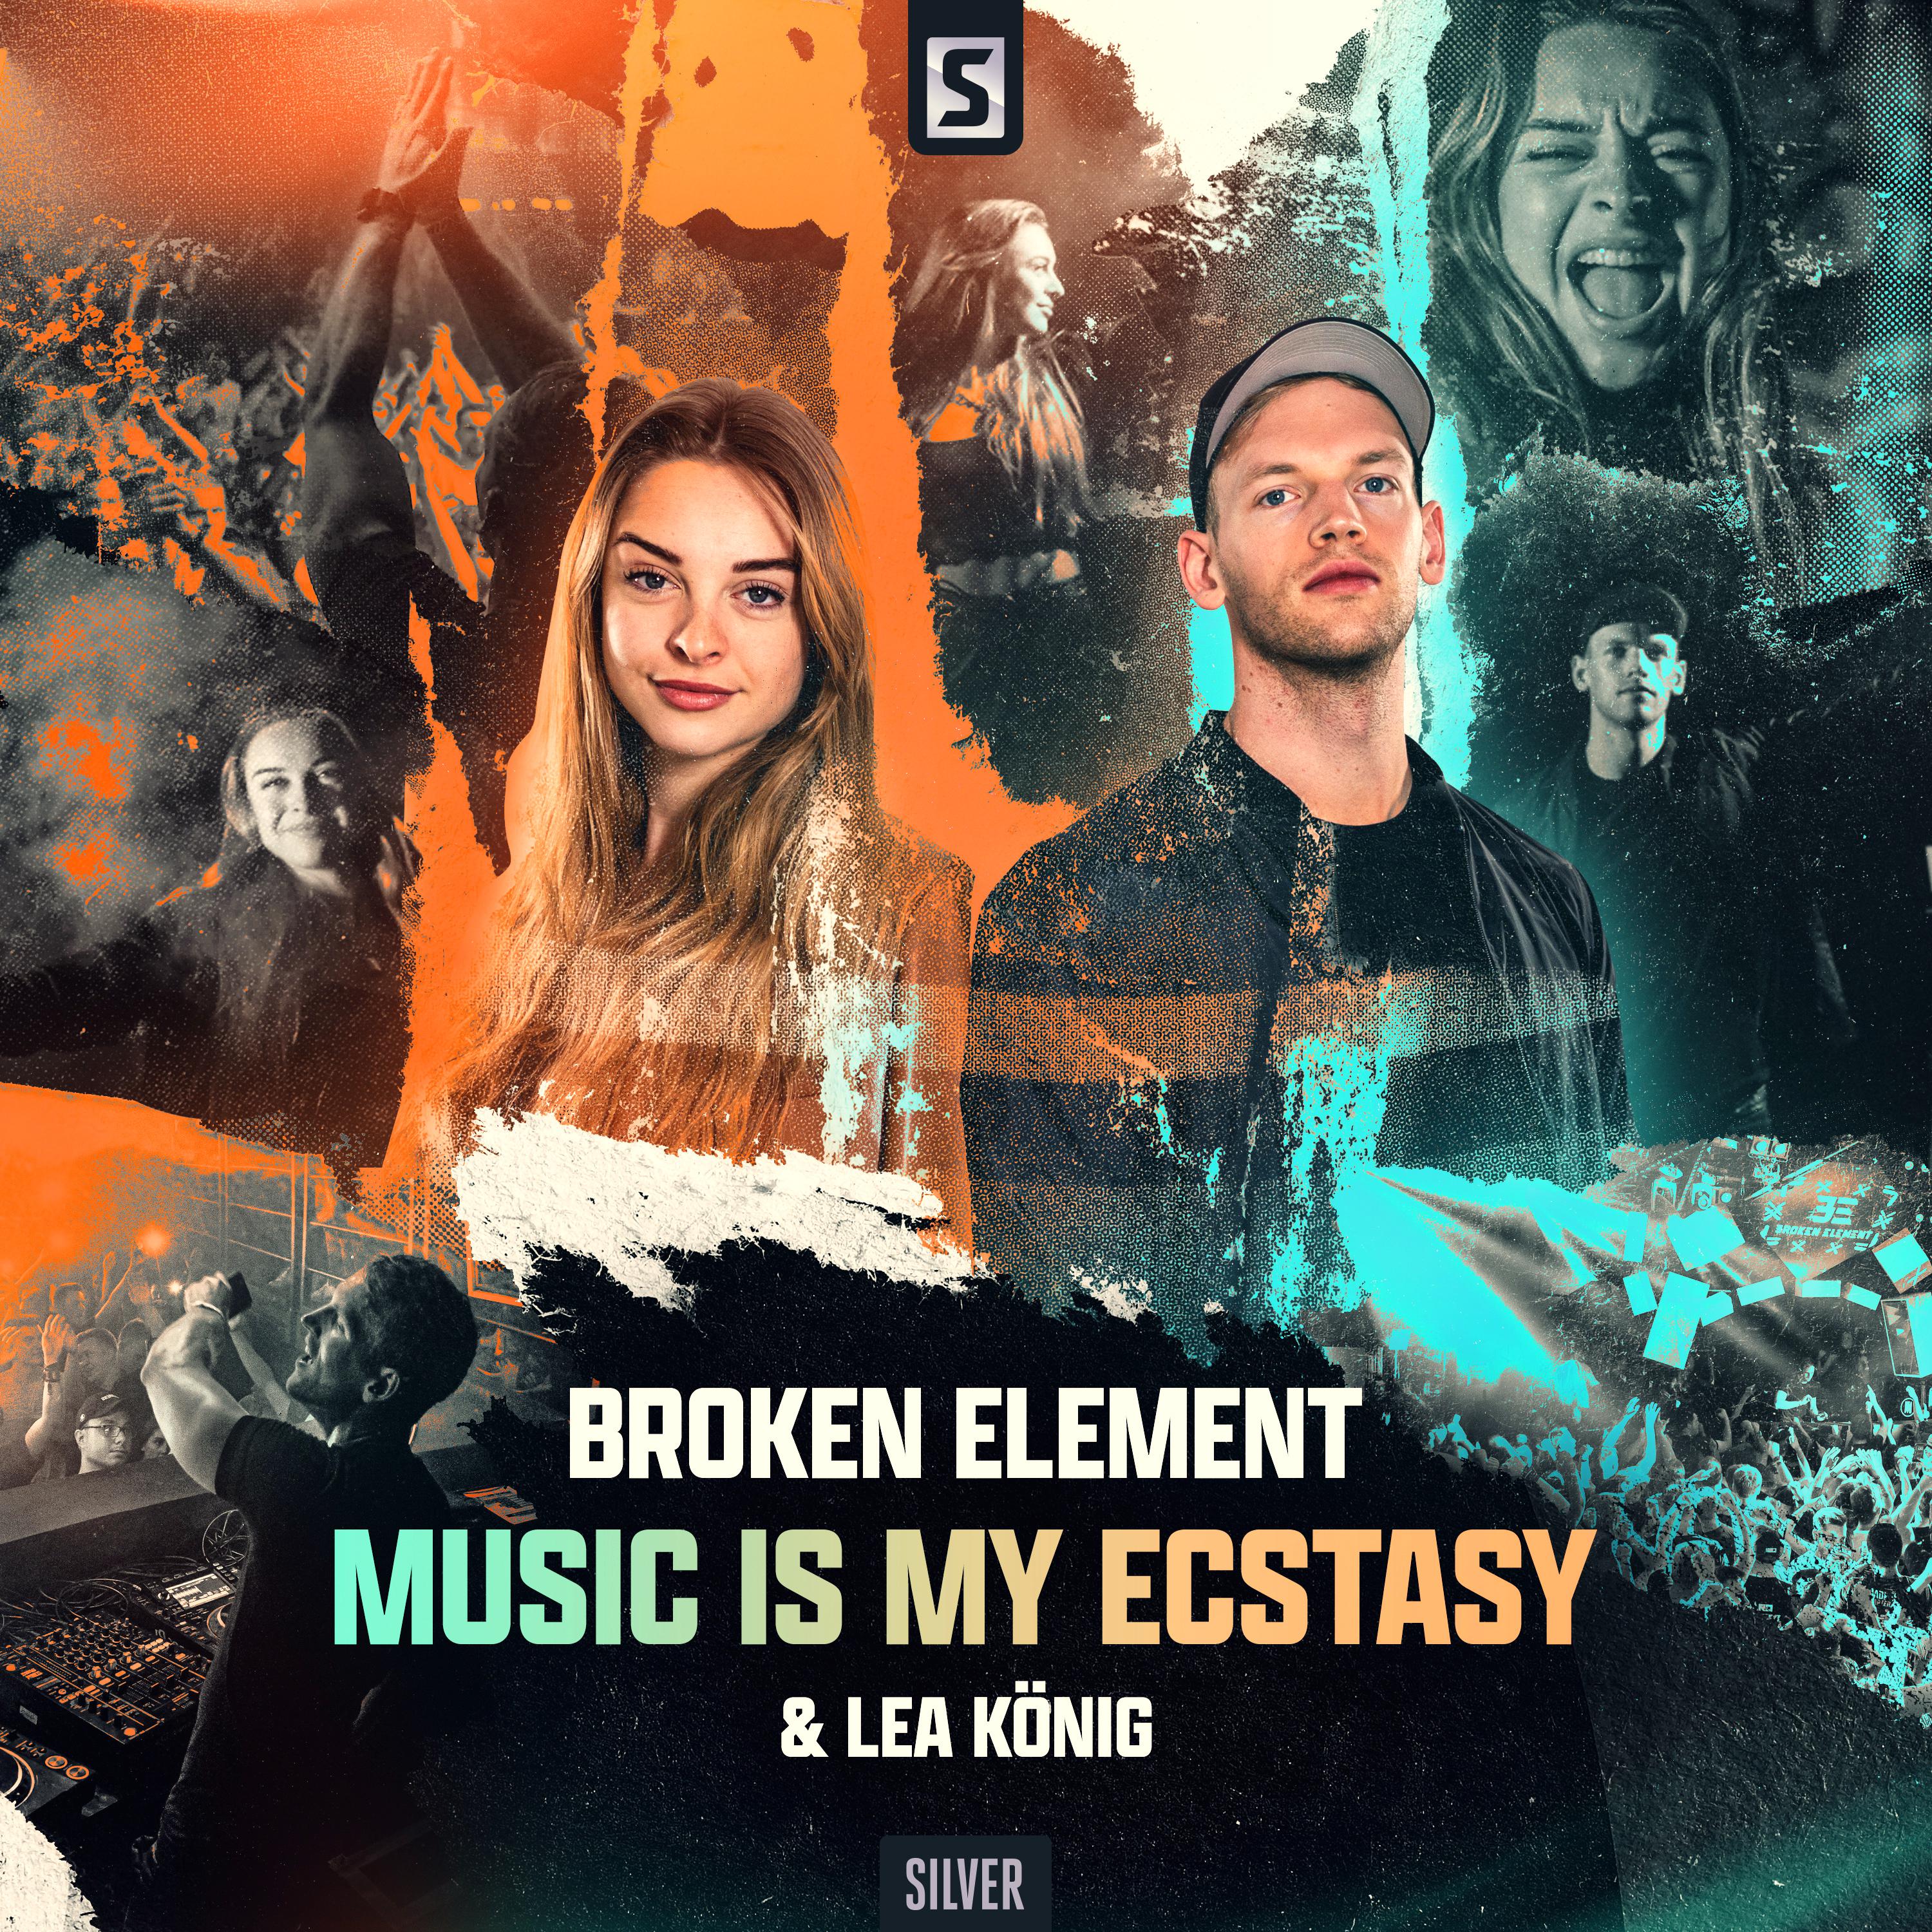 Music Is My Ecstasy歌词 歌手Broken Element / Lea König-专辑Music Is My Ecstasy-单曲《Music Is My Ecstasy》LRC歌词下载